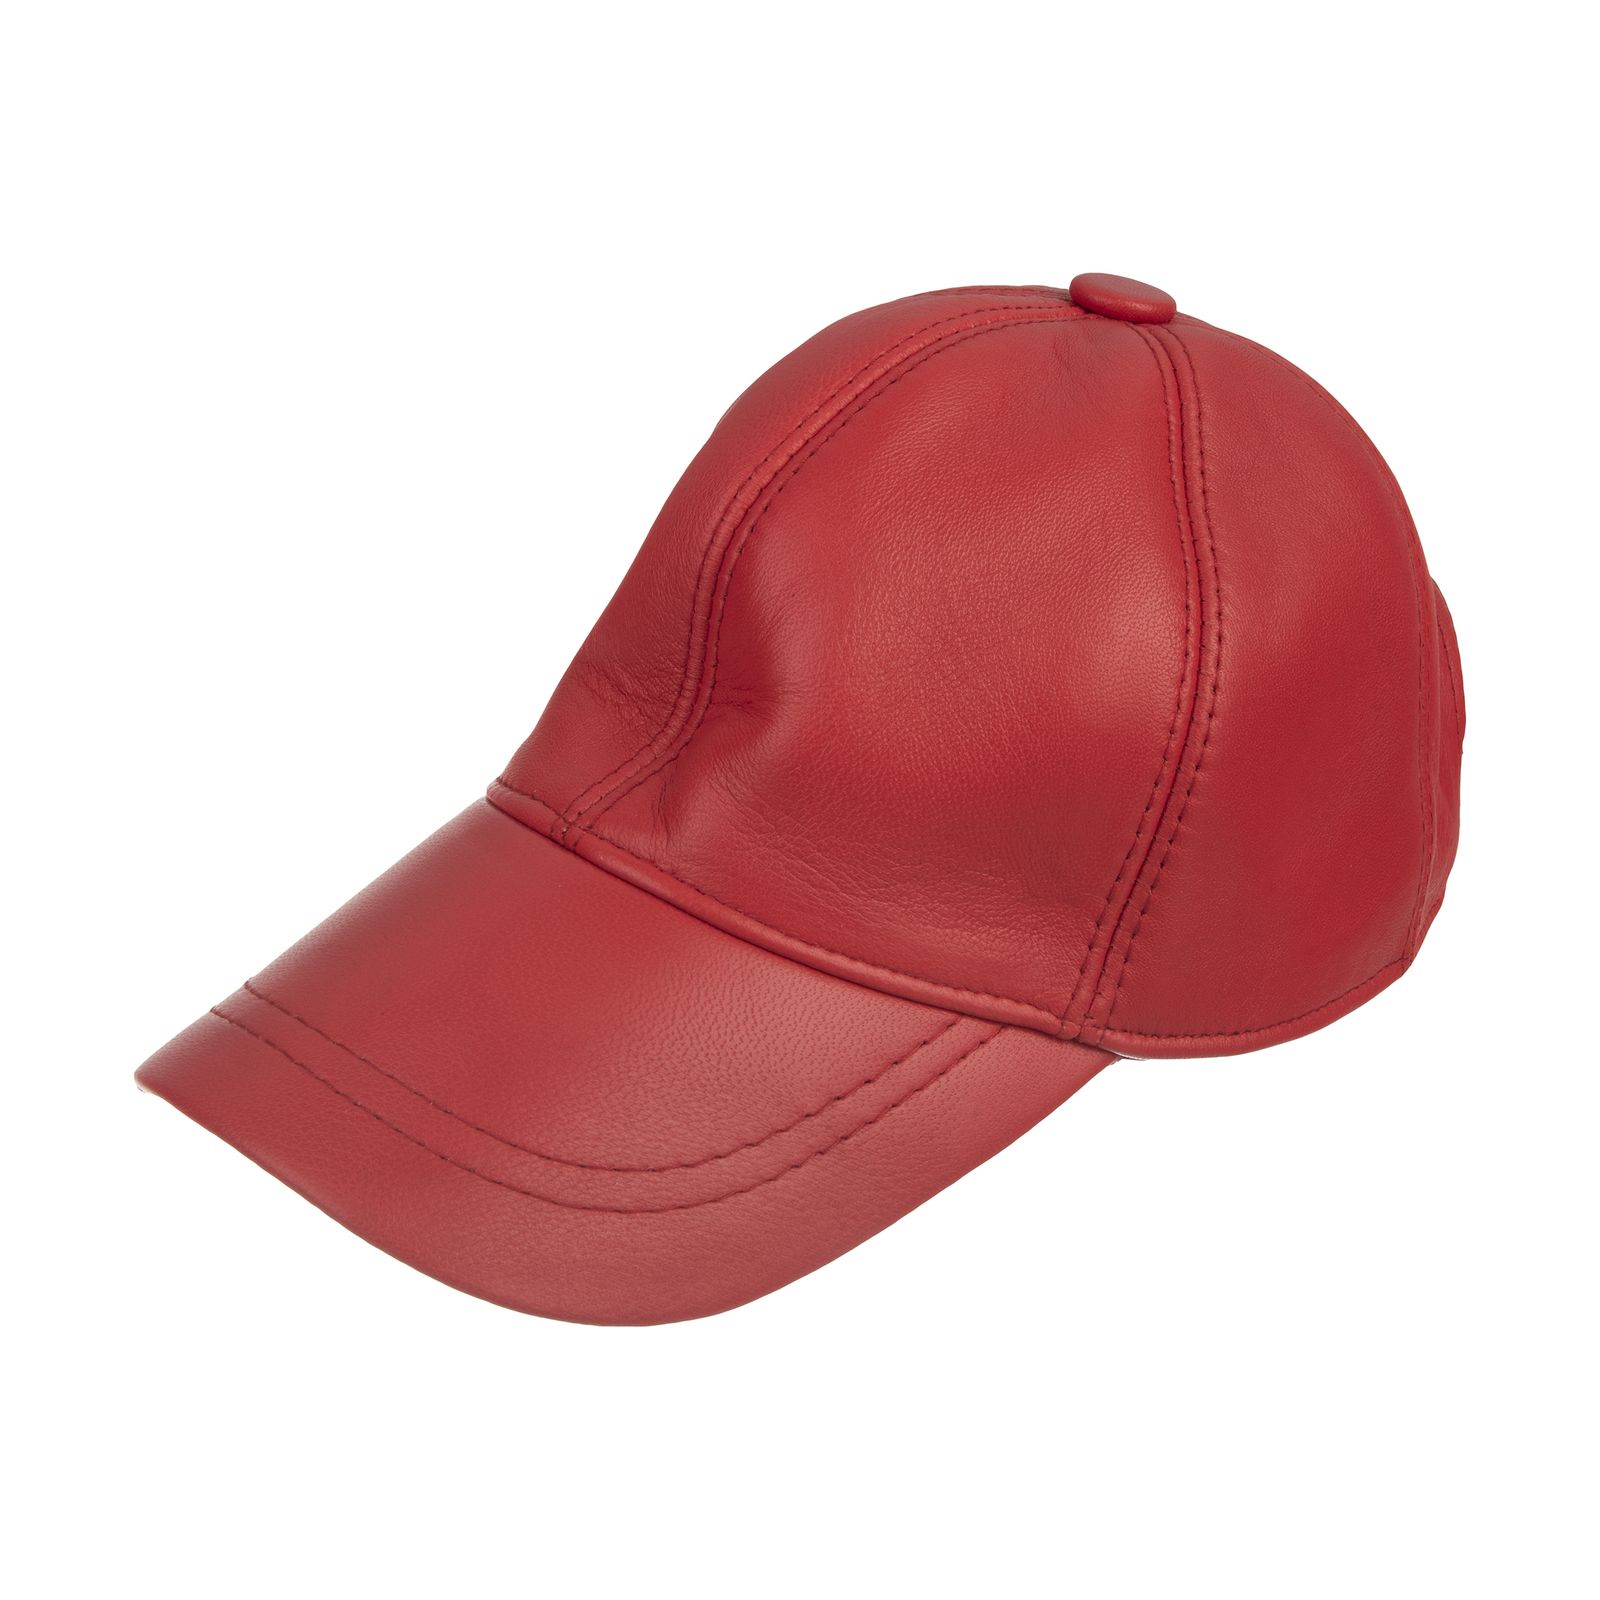 کلاه شیفر مدل 8701a09 - قرمز - 1